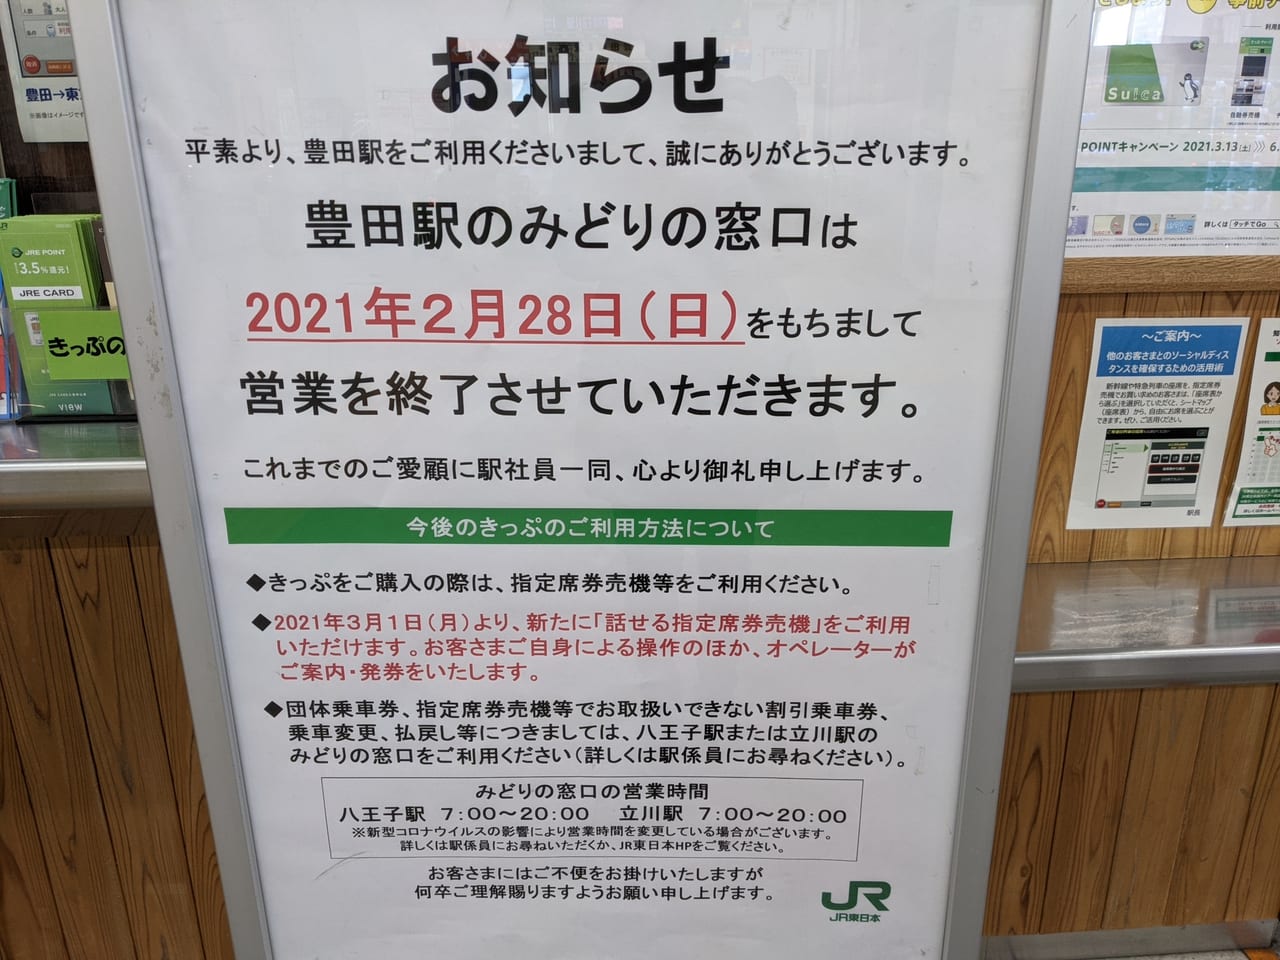 日野市 Jr中央線豊田駅構内のみどりの窓口が21年2月28日 日 をもって閉鎖されます 号外net 日野市